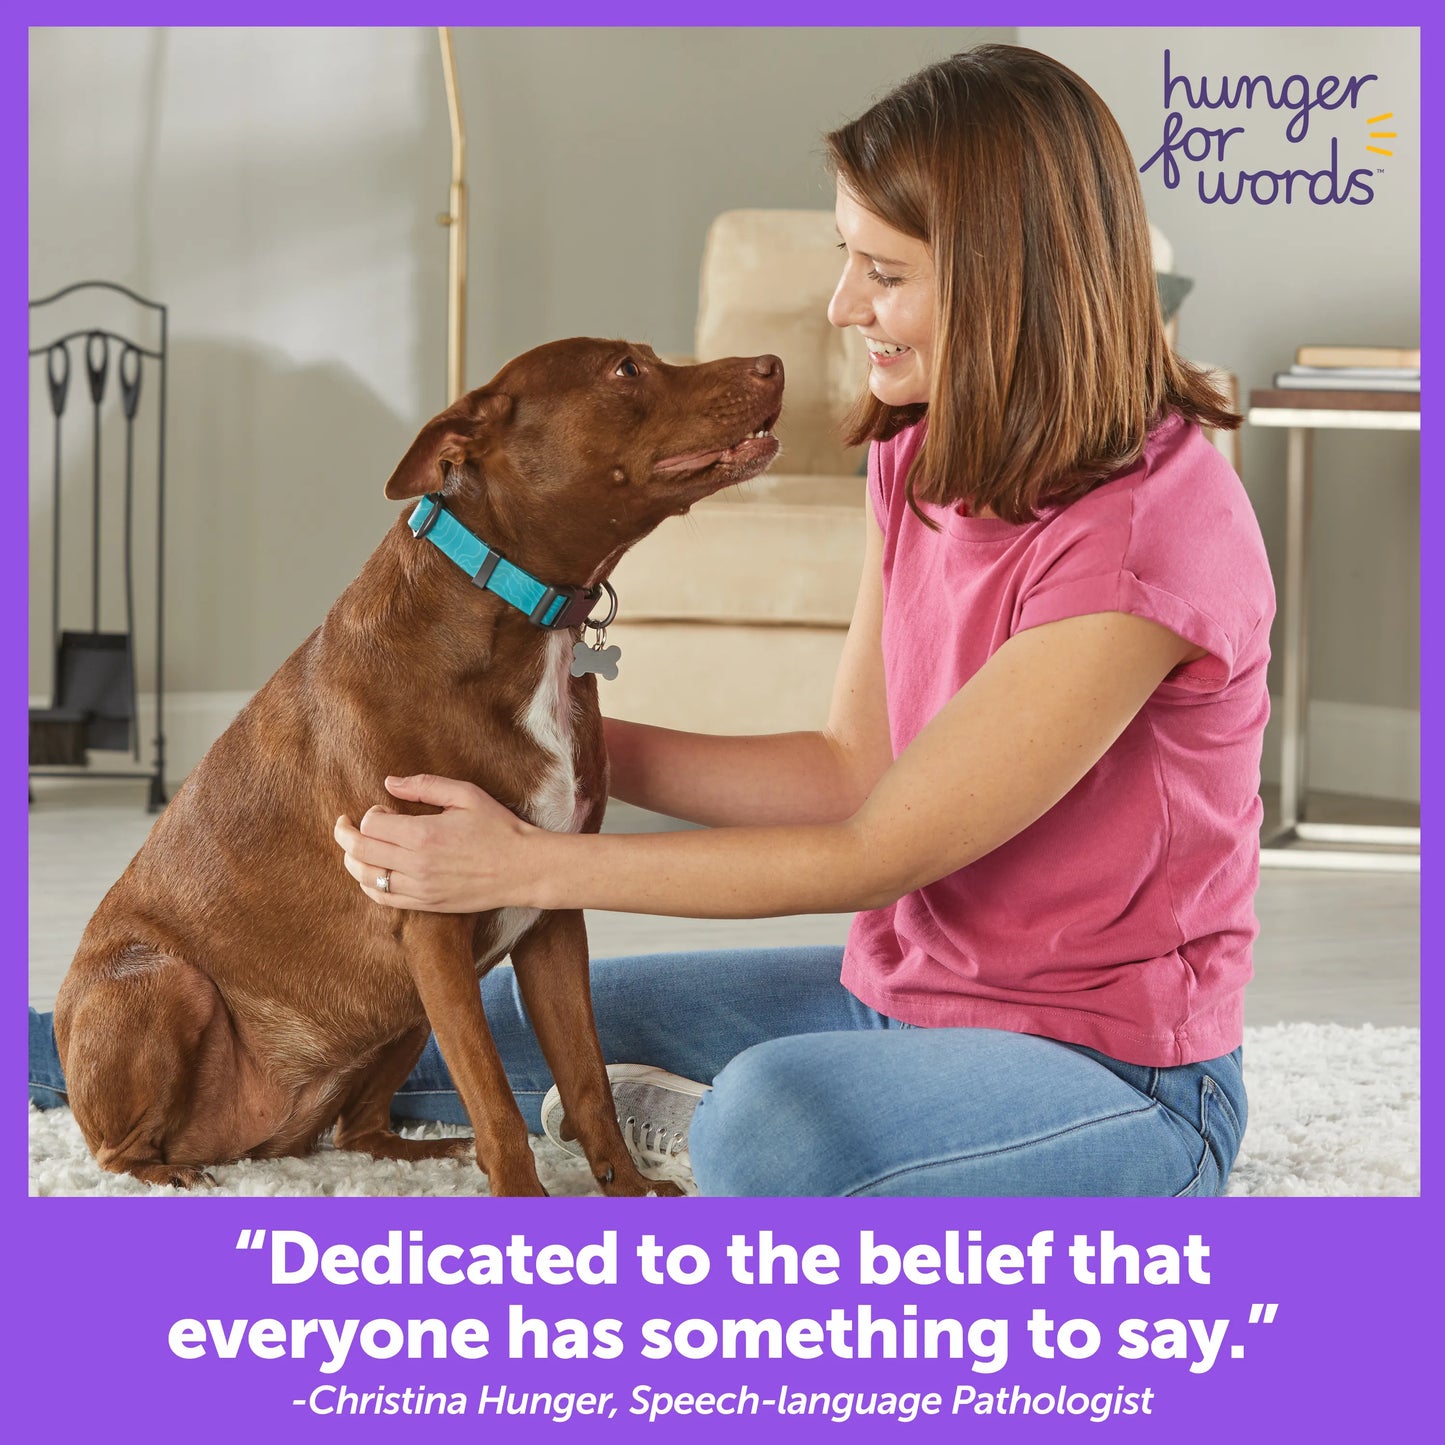 Learning Resources Hunger for Words Talking Pet Starter Set